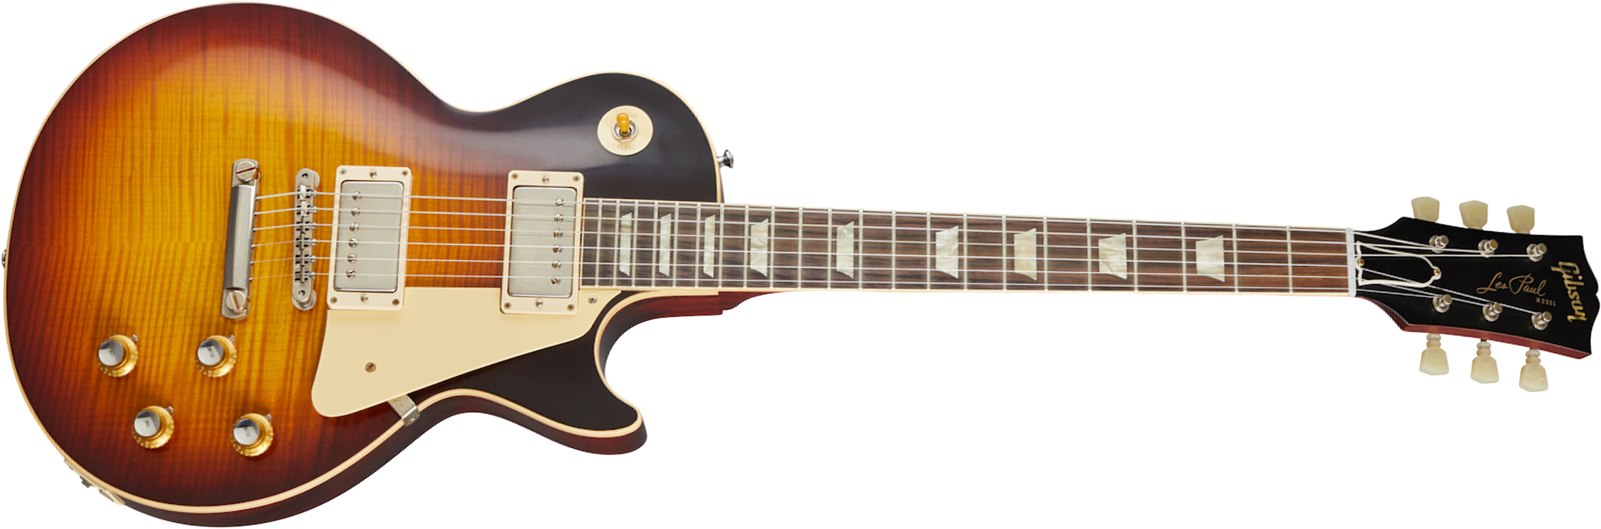 Gibson Custom Shop Les Paul Standard 1960 V3 60th Anniversary 2h Ht Rw - Vos Washed Bourbon Burst - Guitarra eléctrica de corte único. - Main picture